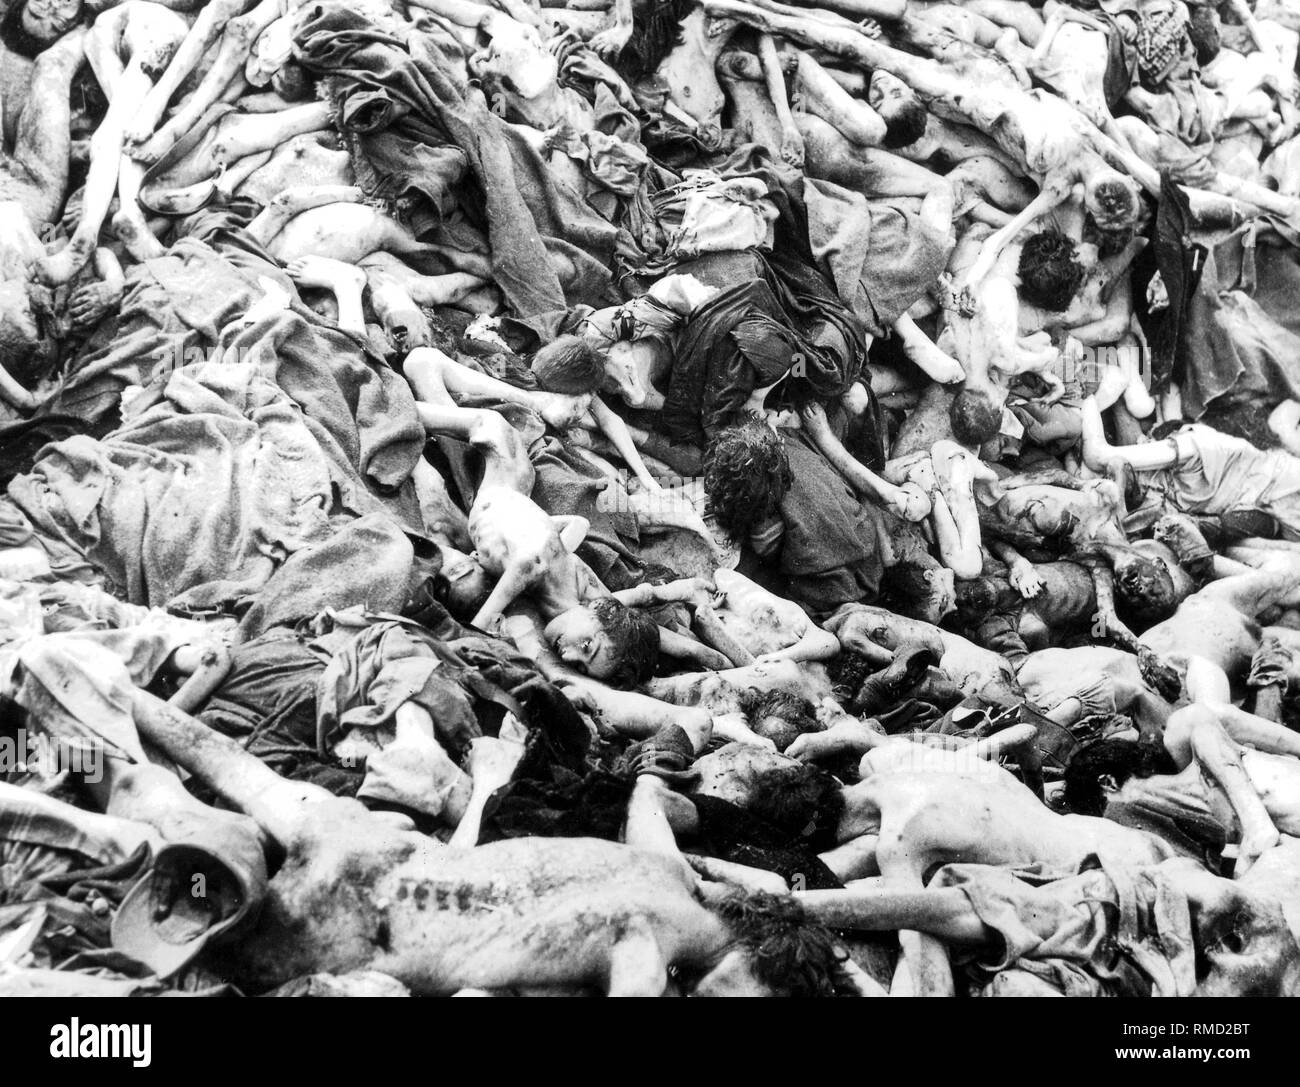 Campo di concentramento liberazione: nella primavera 1945 l'inglese incontrato tali scene di orrore nel Bergen-Belsen. Foto Stock